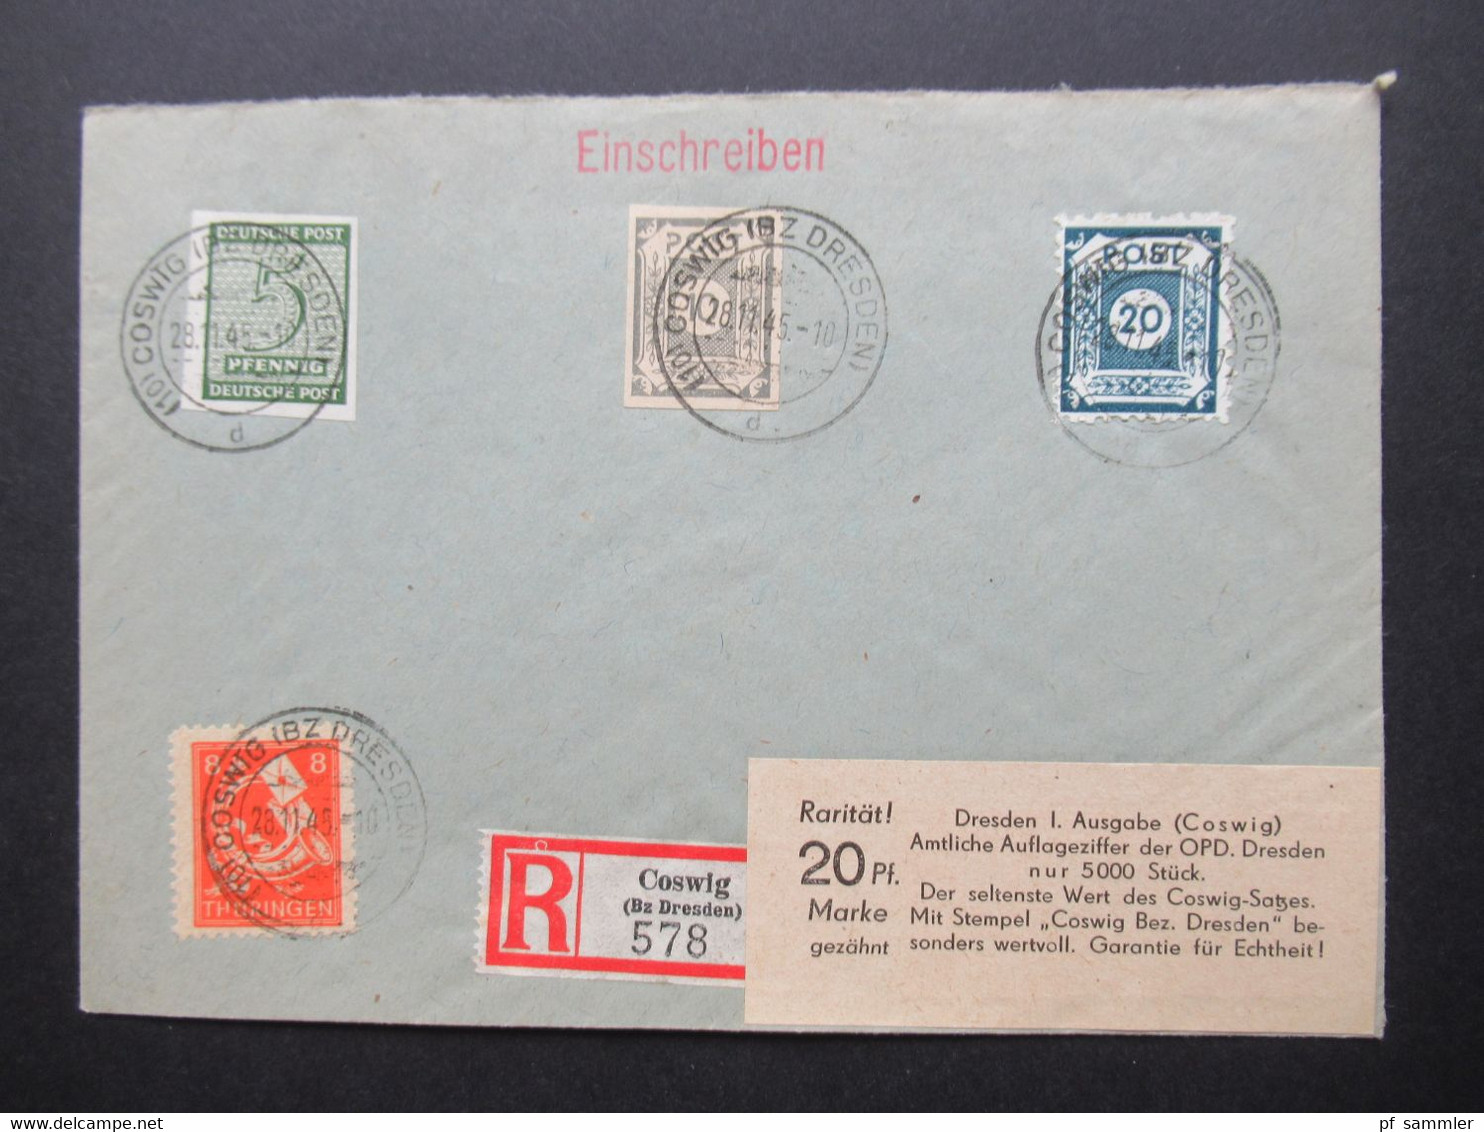 Belegeposten 1945 / 46 SBZ 95 Kempe Briefe Postmeistertrennungen / Randstücke / Besonderheiten mit original Slg. Heften